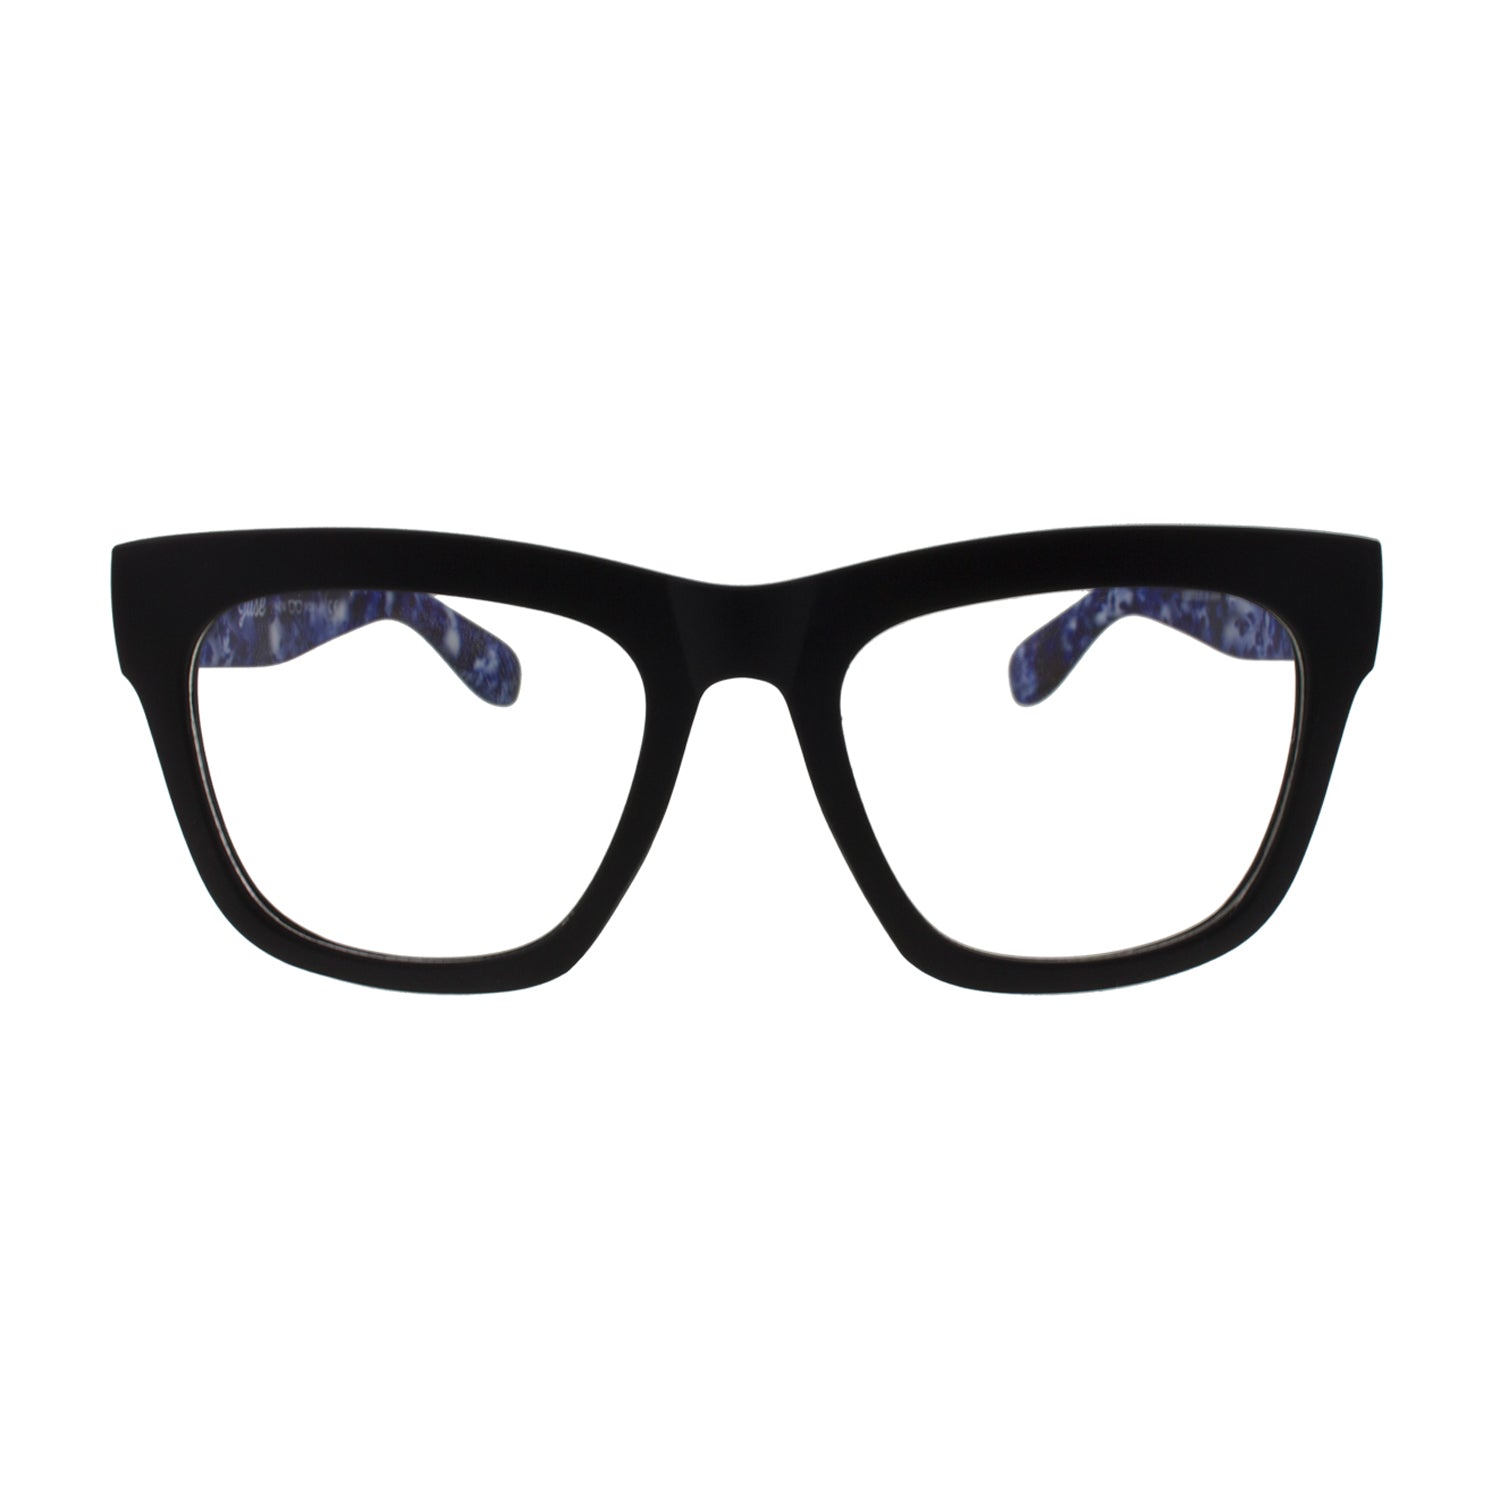 نظارات Jase New York Avery الشمسية باللون الأزرق الضبابي